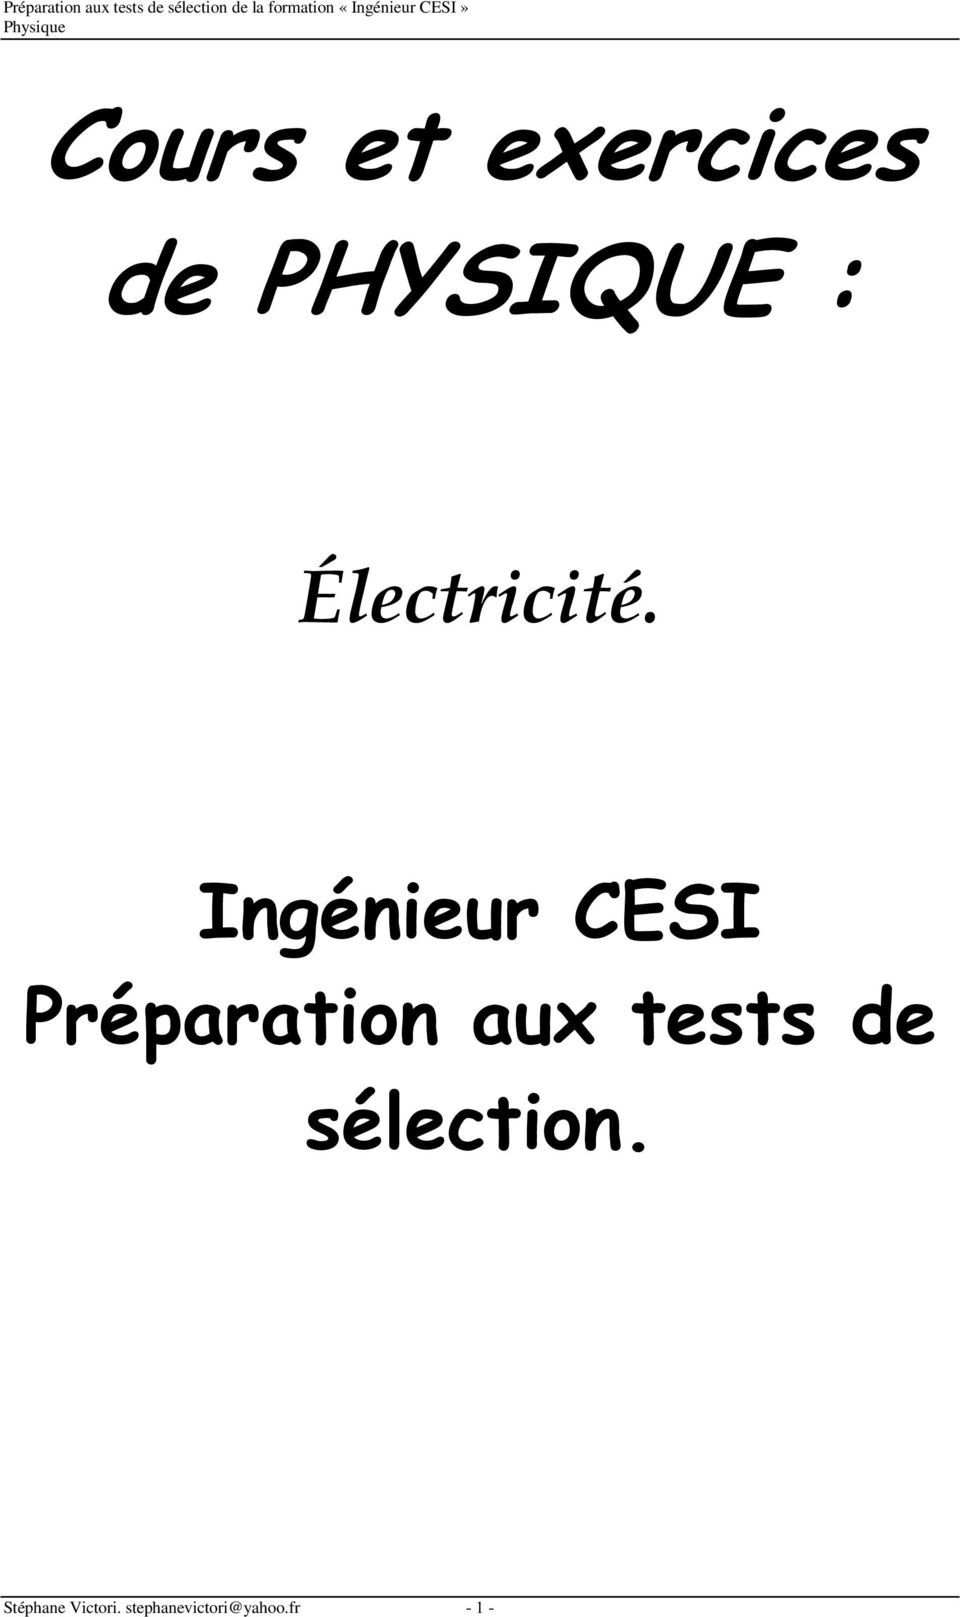 Ingéneur CESI Préparaton aux